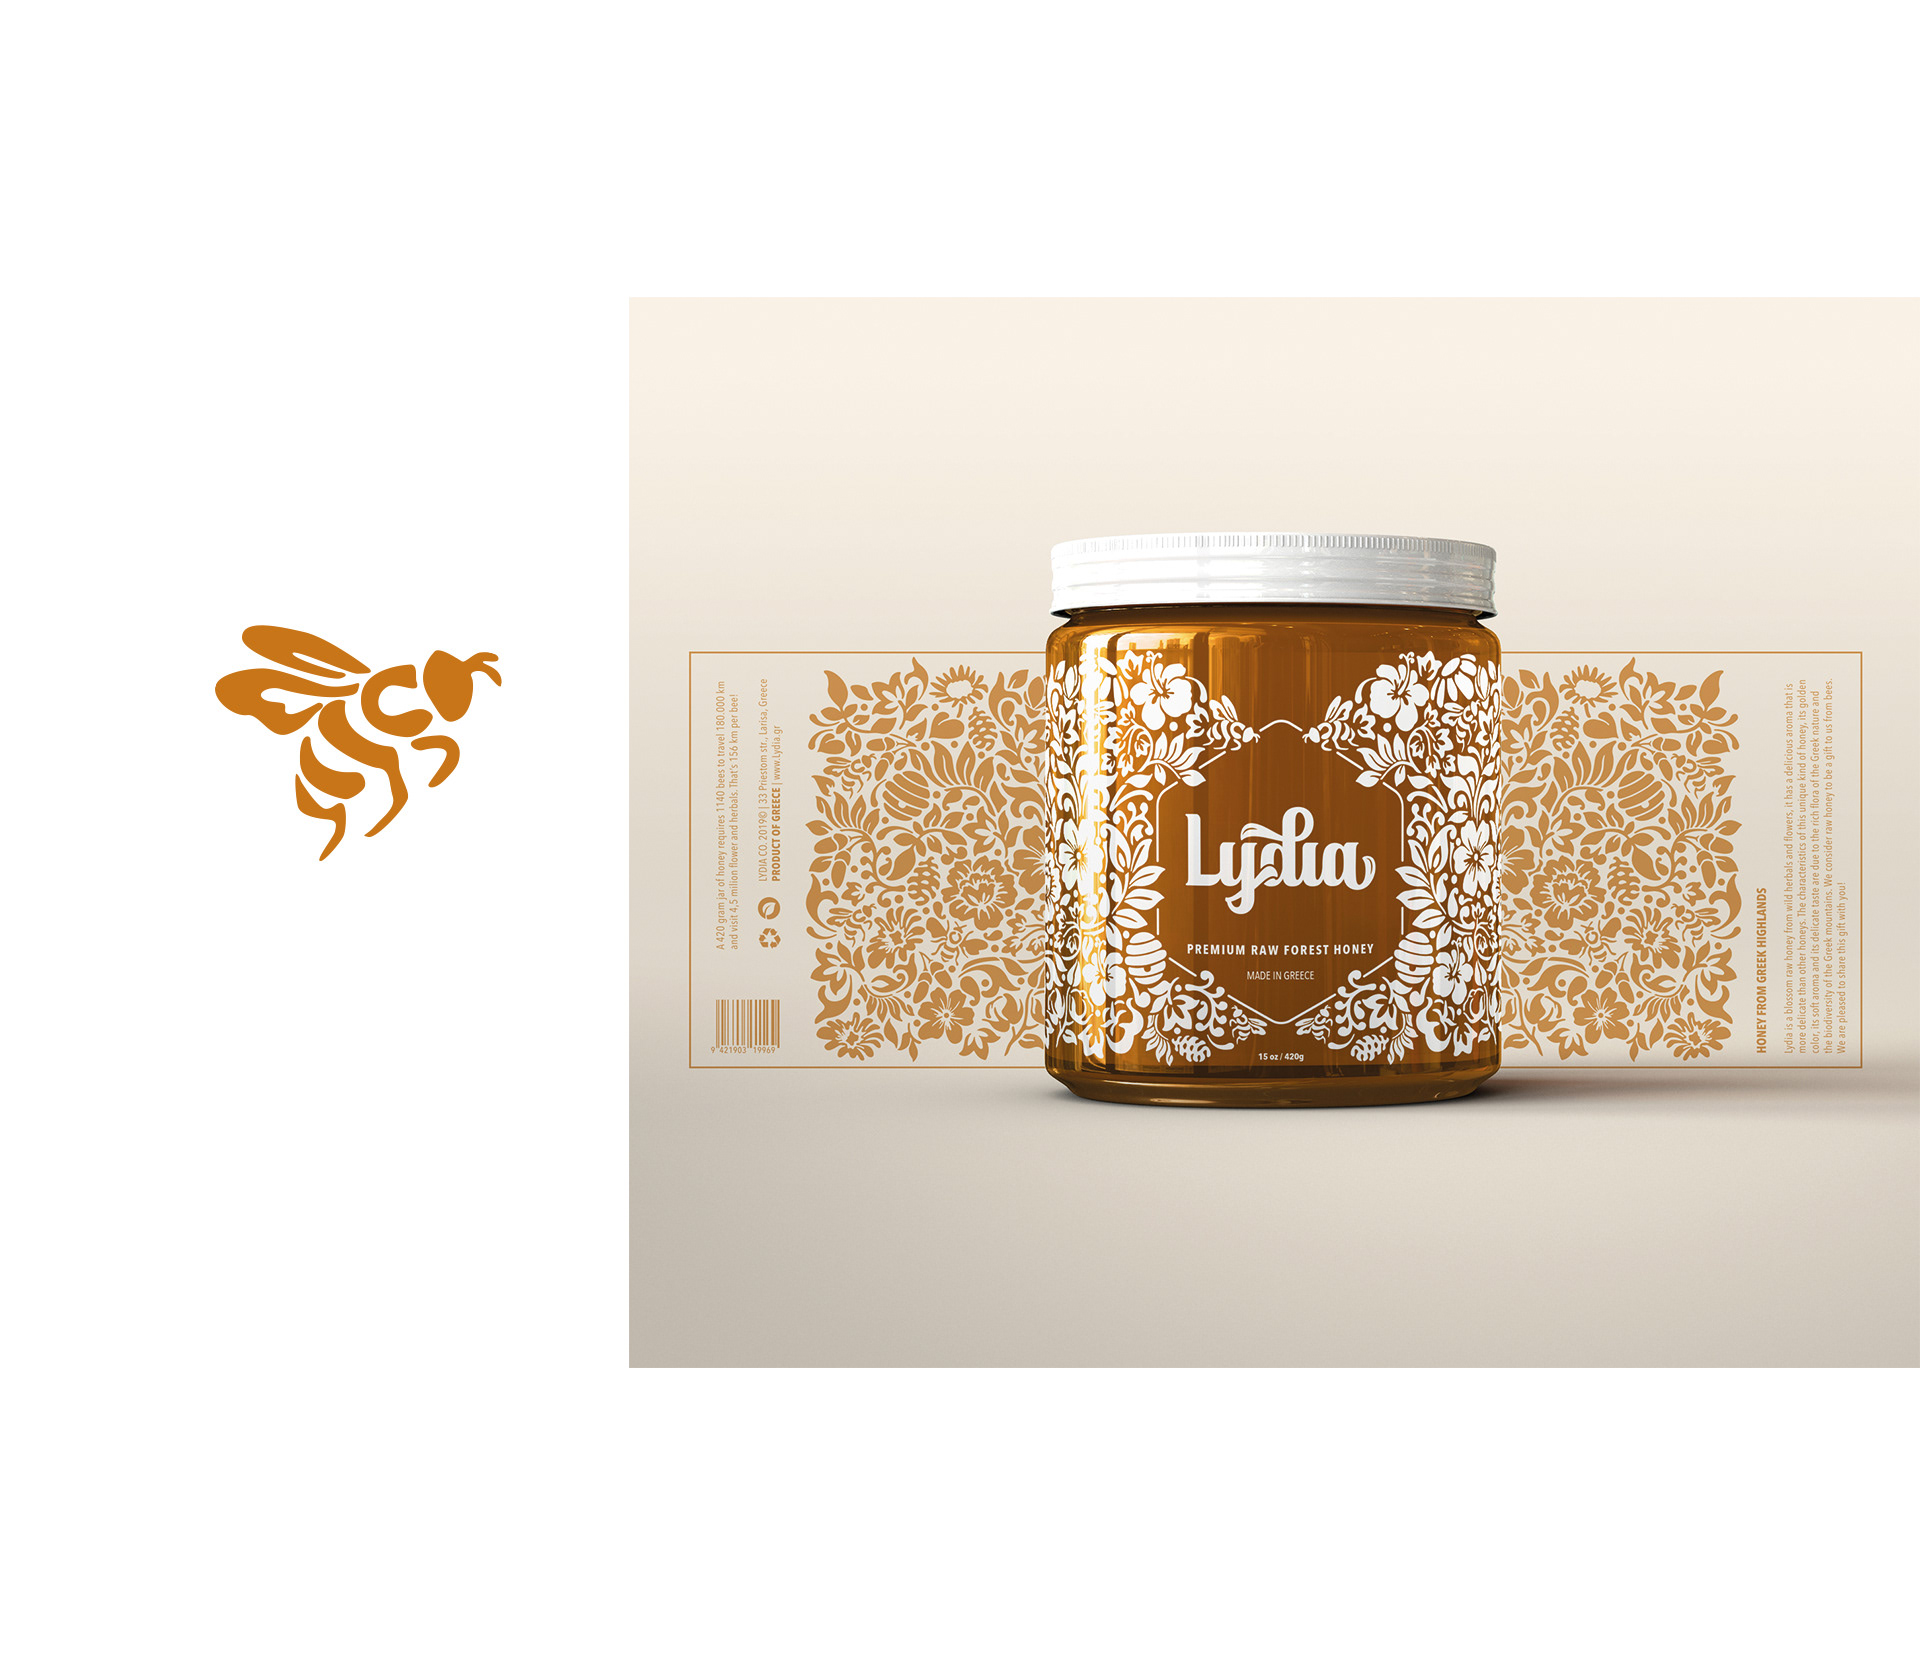 外国蜂蜜包装设计 蜂蜜包装设计哪家强 蜂蜜包装设计公司 第6张